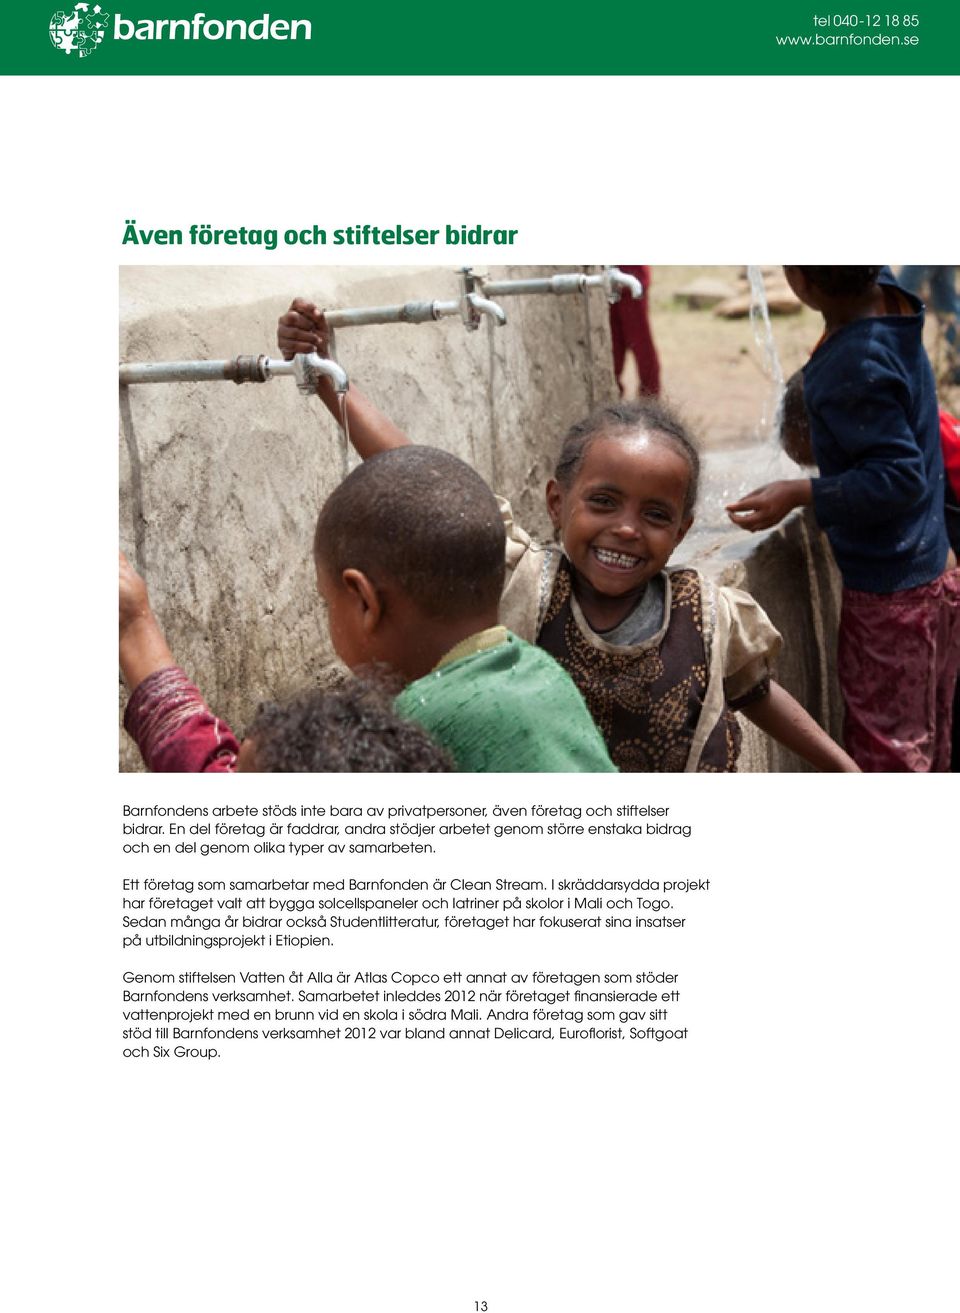 I skräddarsydda projekt har företaget valt att bygga solcellspaneler och latriner på skolor i Mali och Togo.